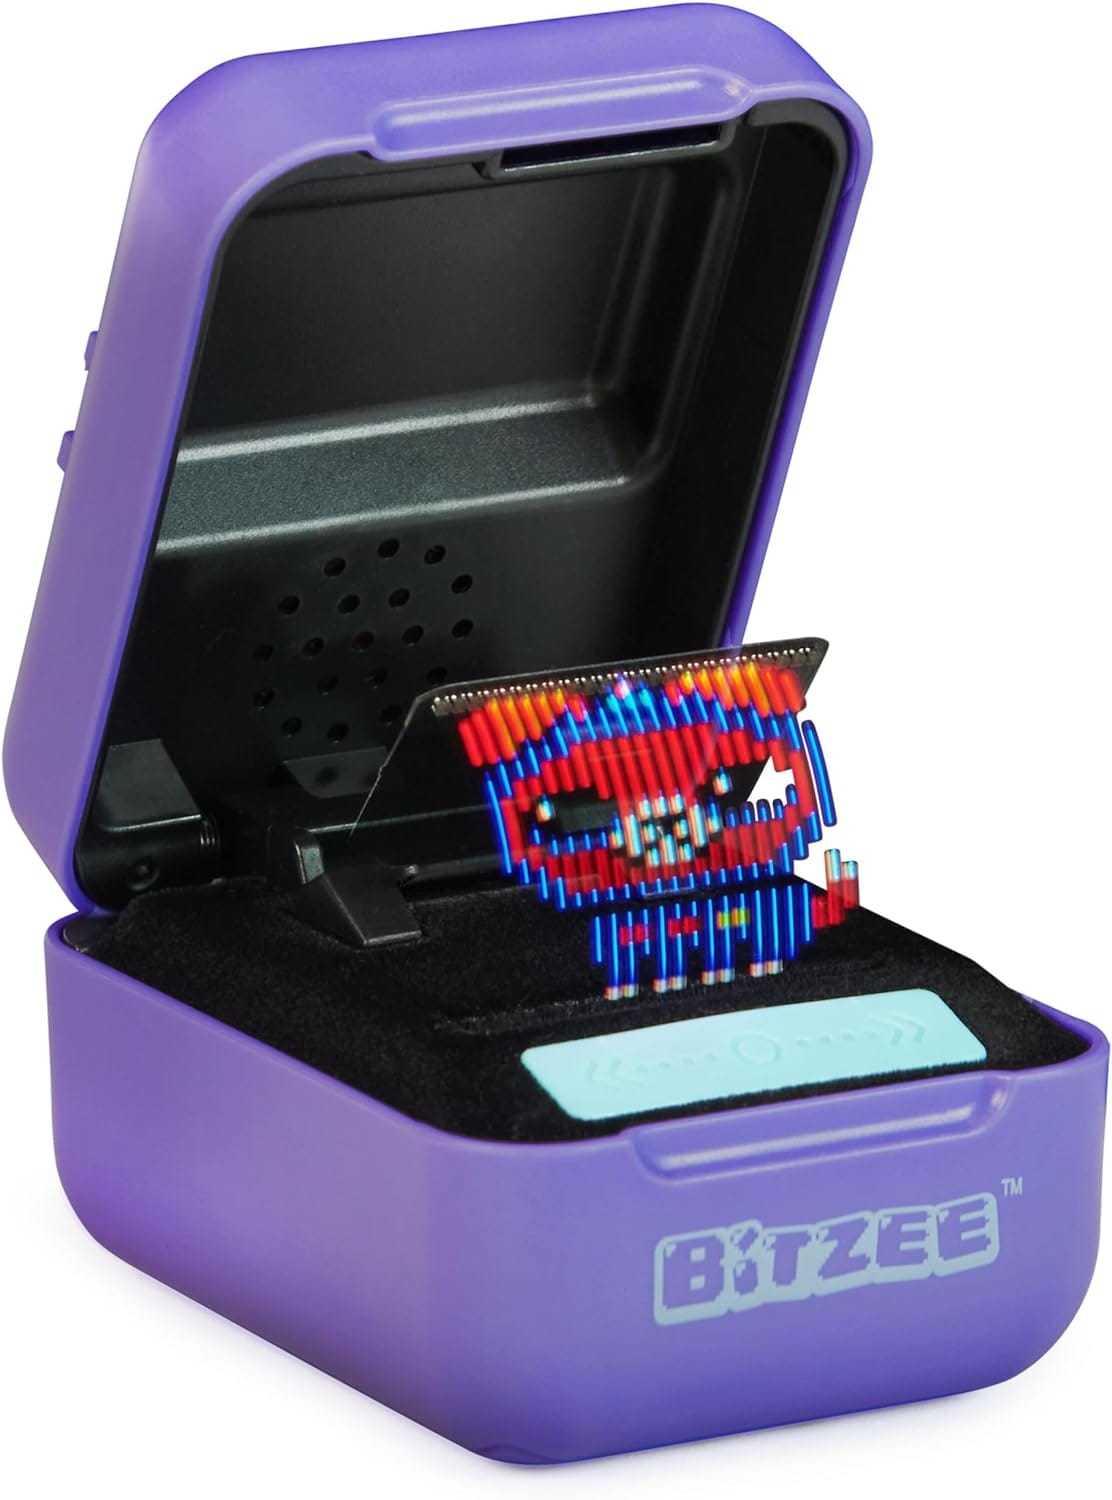 Bitzee Interactive Toy Digital Pet Review